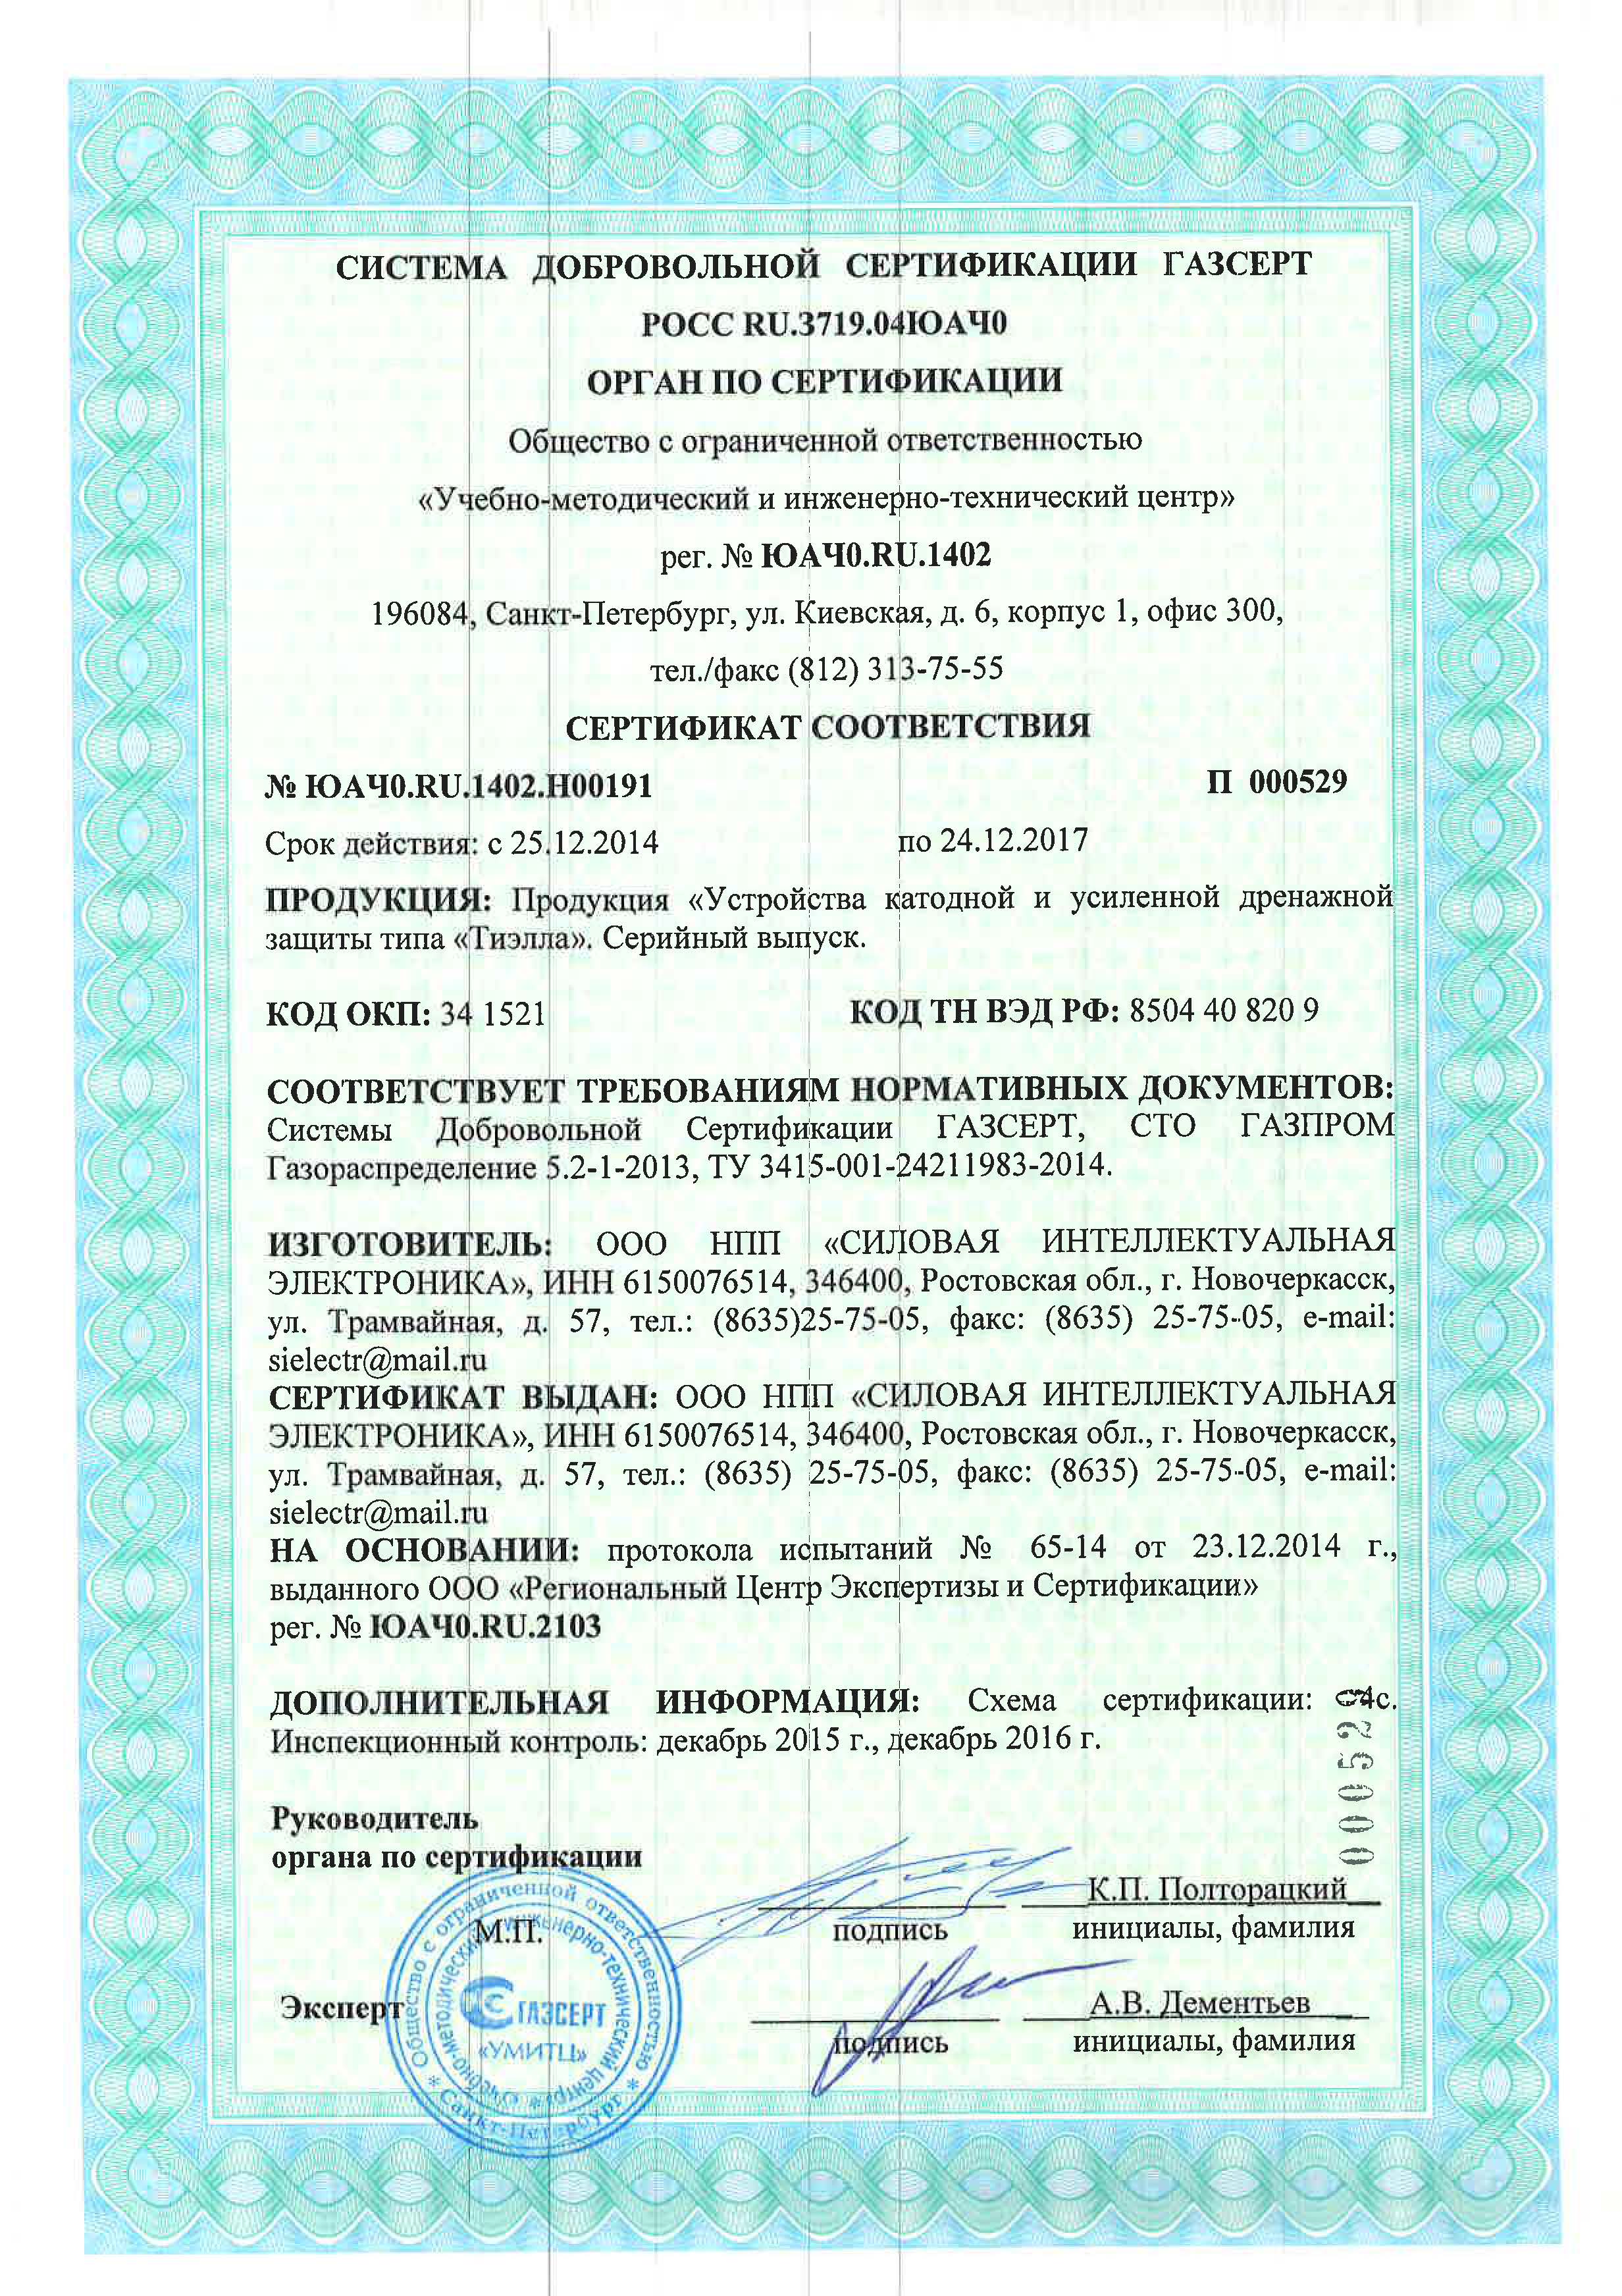 Сертификат ГАЗСЕРТ на станции катодной и усиленной дренажной защиты типа "ТИЭЛЛА" НПП "СИЭЛ"